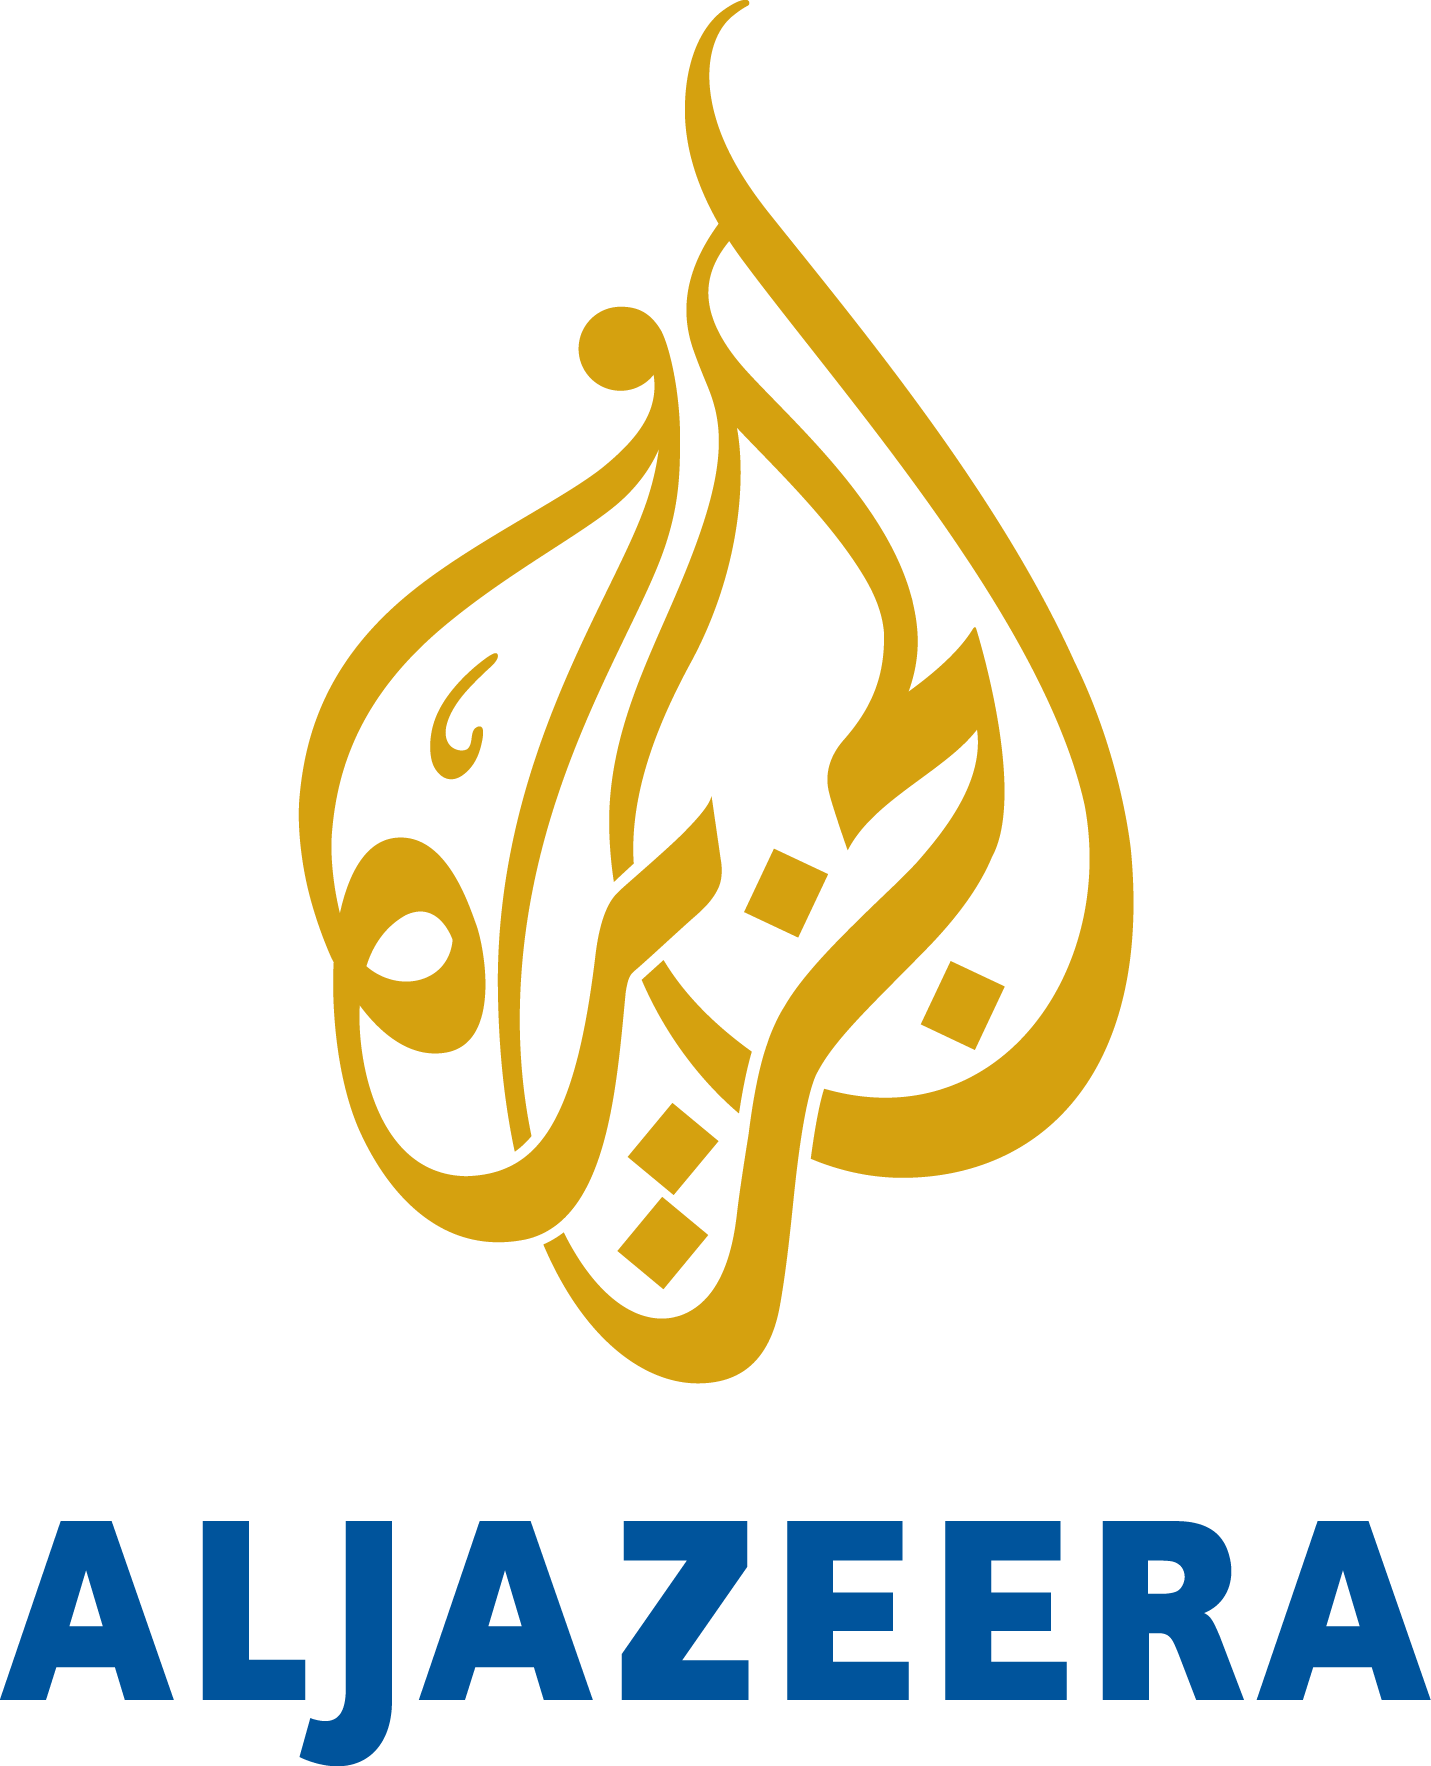 al-jazeera-logo File:Al Jazee